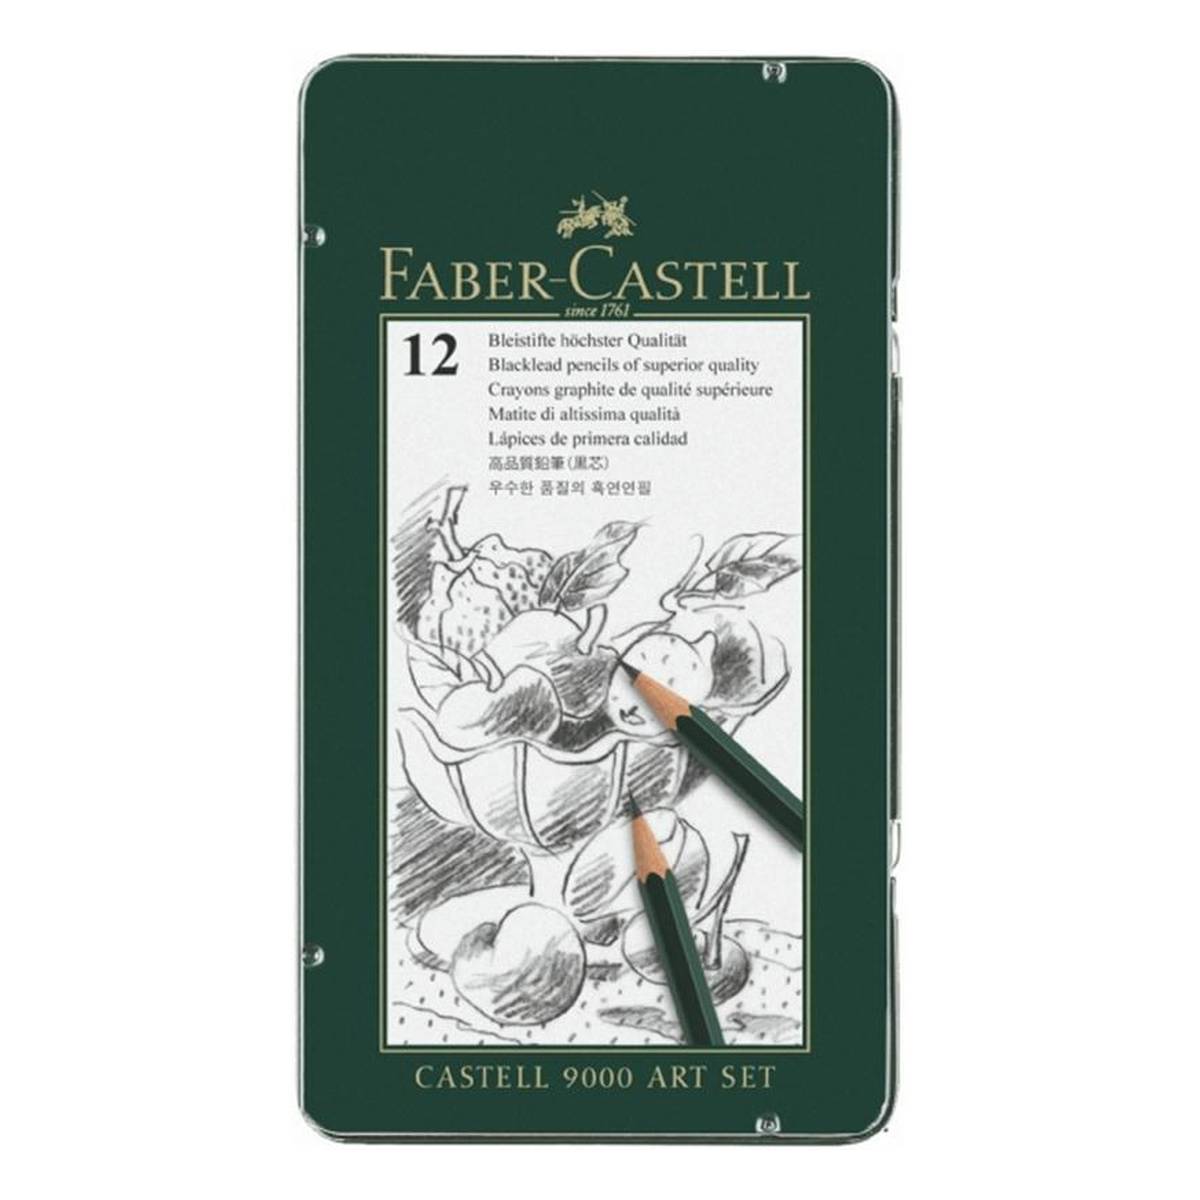 Faber Castell 9000 Art Set 12 Pieces | Hobbycraft